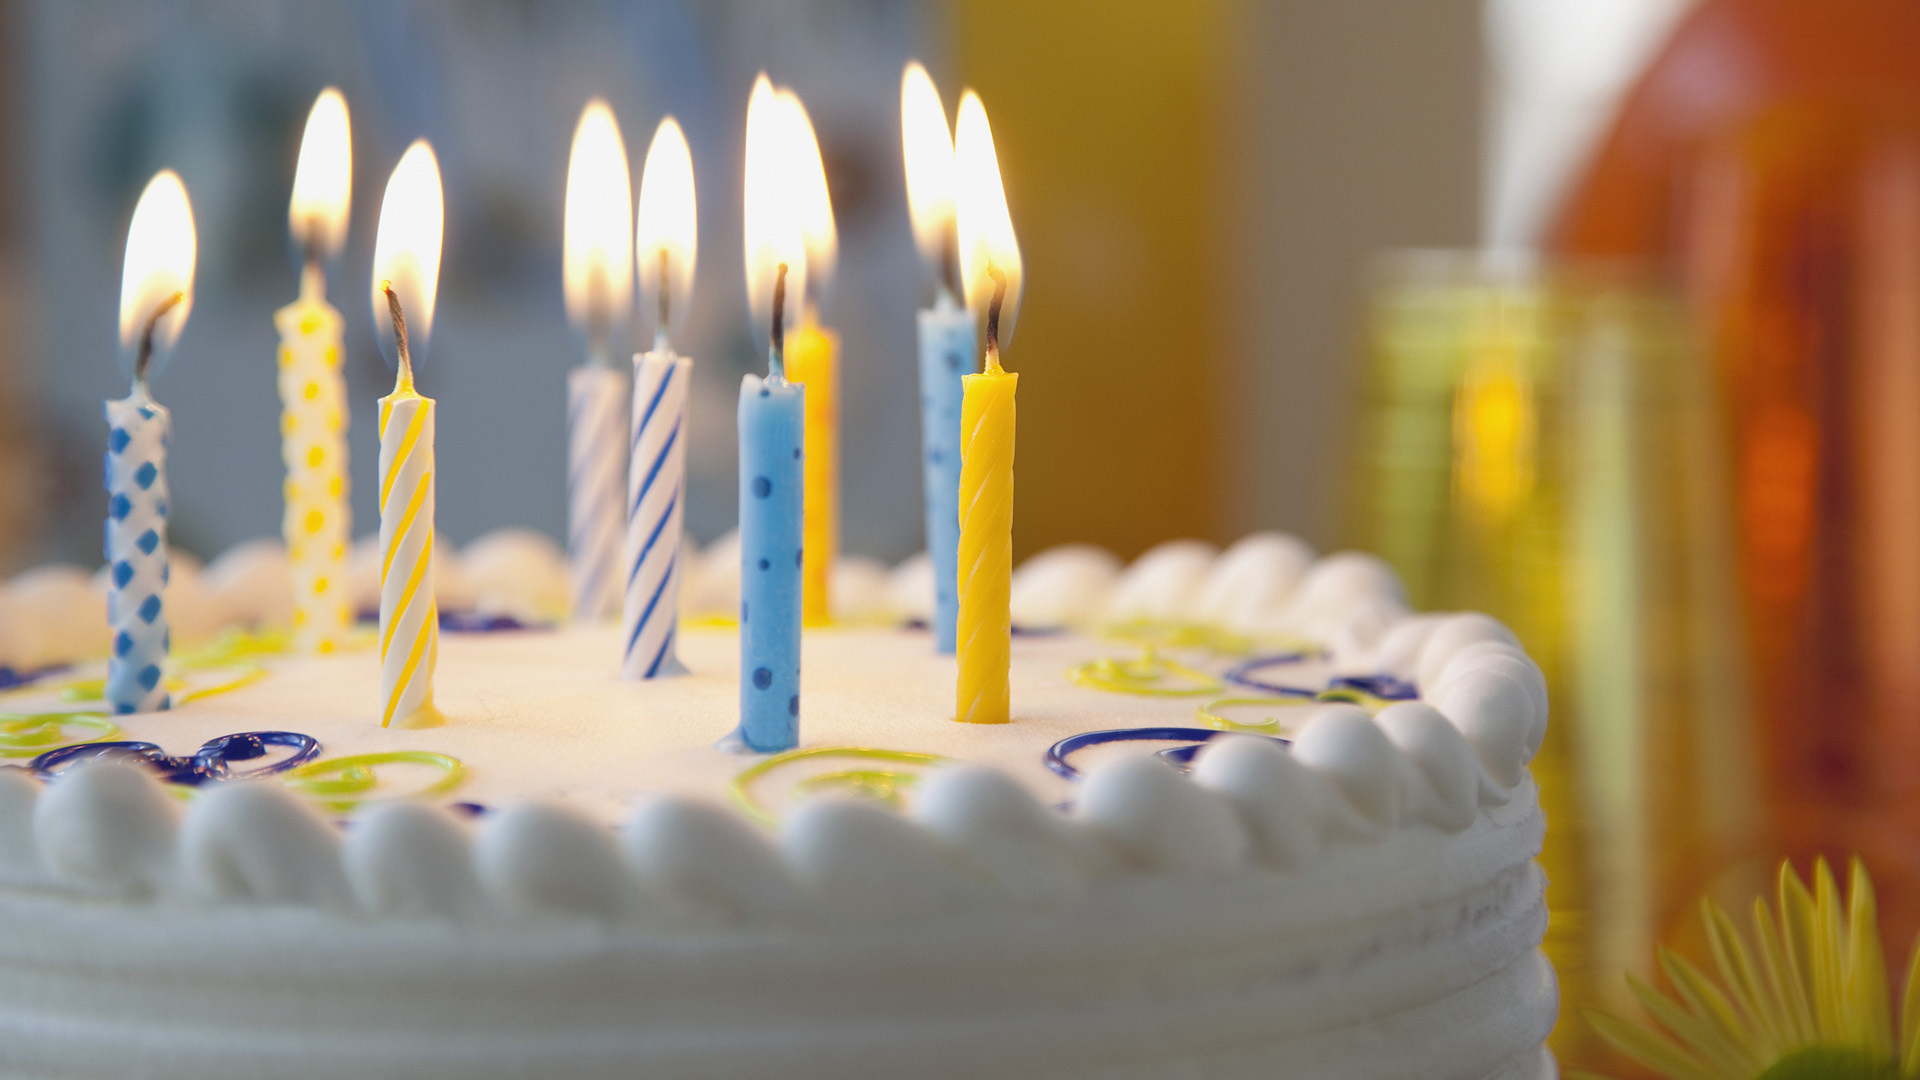 Науковці довели, що задувати свічки на торті не дуже безпечно